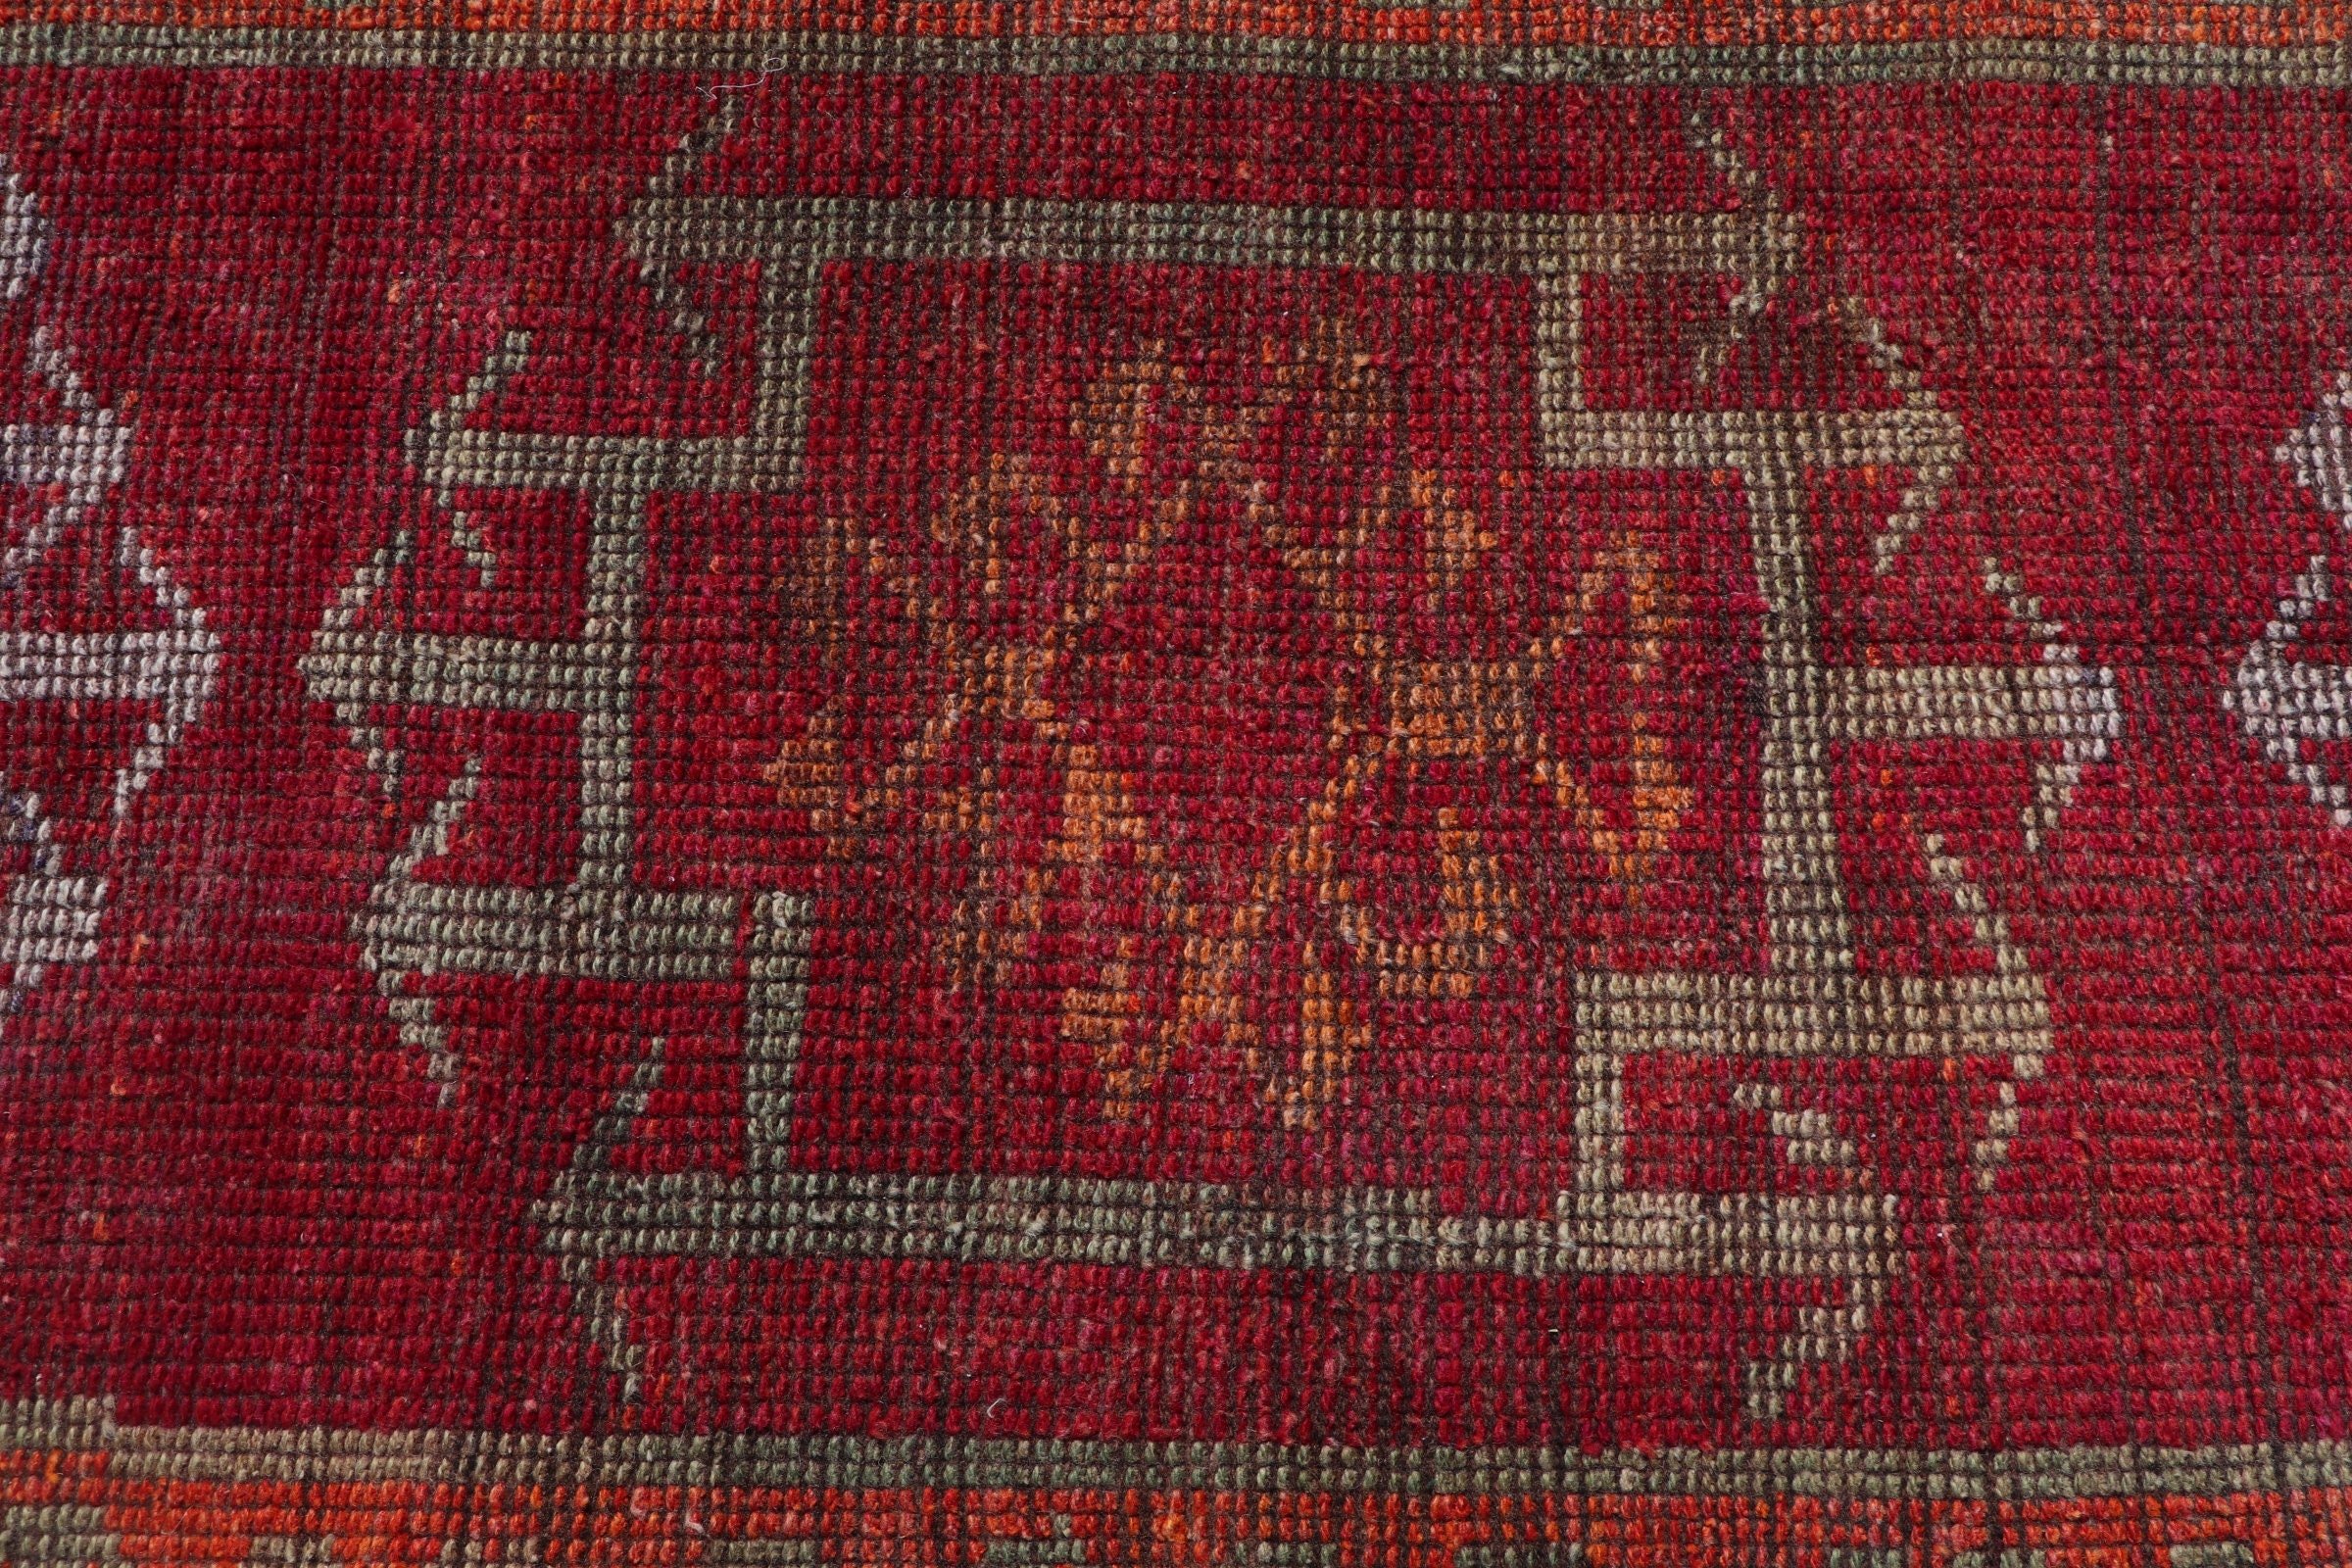 Anatolian Rug, Turkish Rug, Ethnic Rug, Rugs for Runner, Bedroom Rugs, Vintage Rug, Red Floor Rugs, 2.9x11.4 ft Runner Rug, Stair Rug